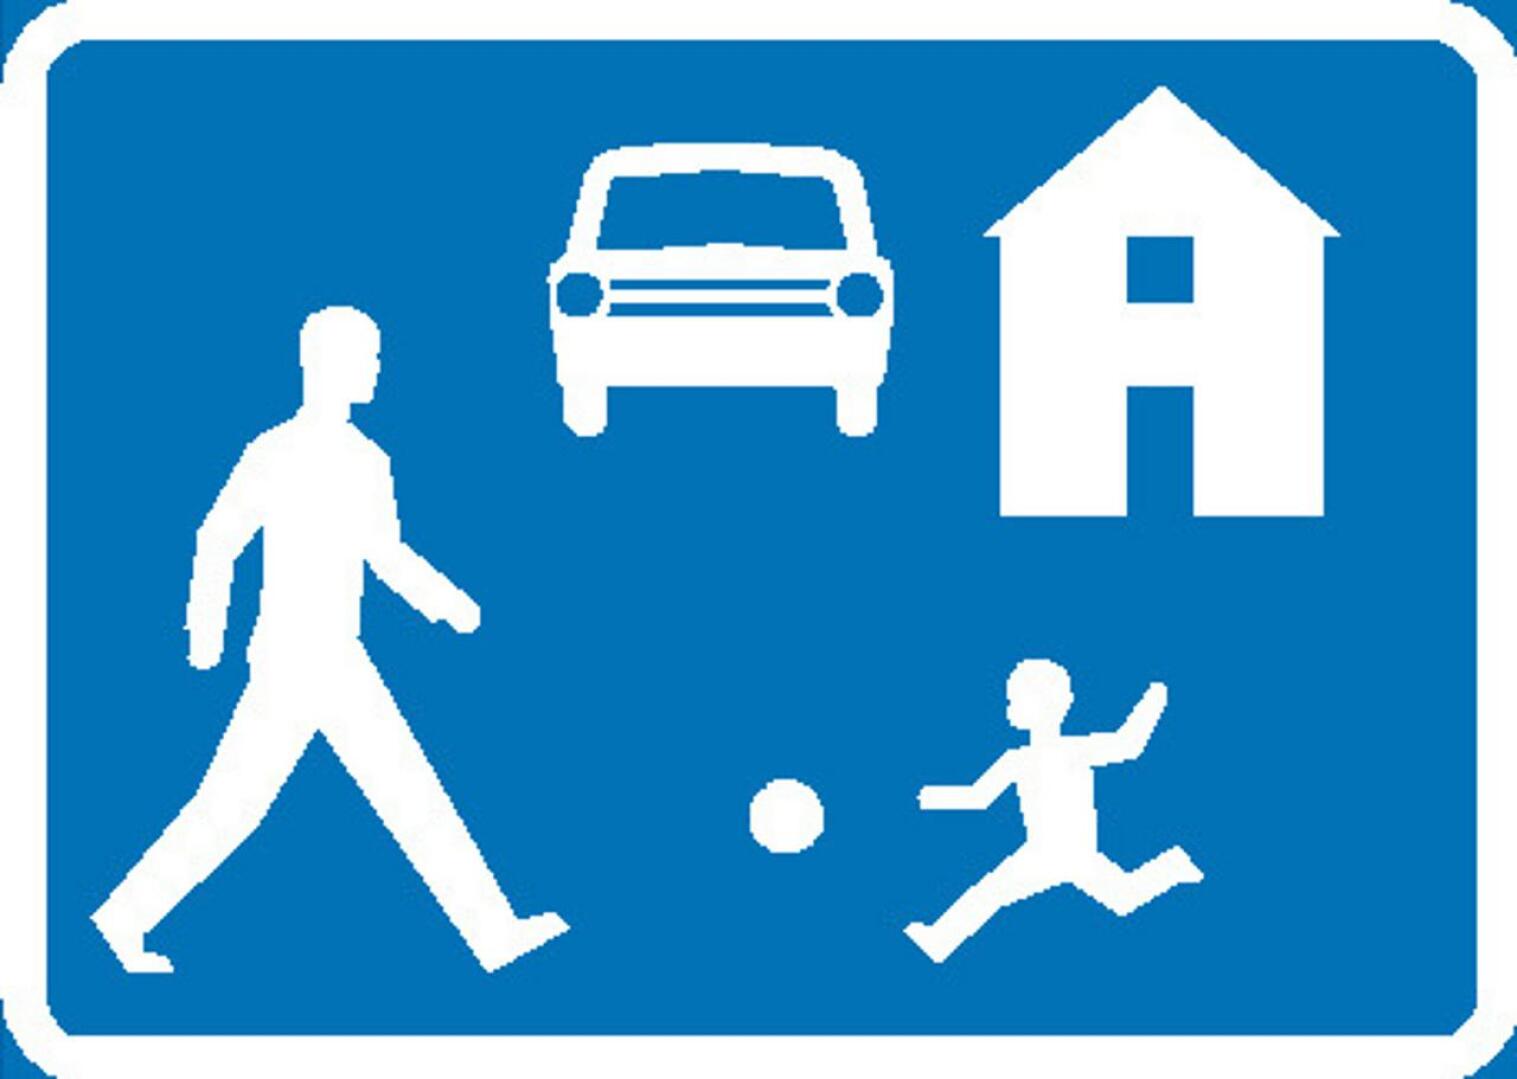 Pihakadulla ajoneuvojen on väistettävä jalankulkijoita ja nopeusrajoitus on 20 km/h.